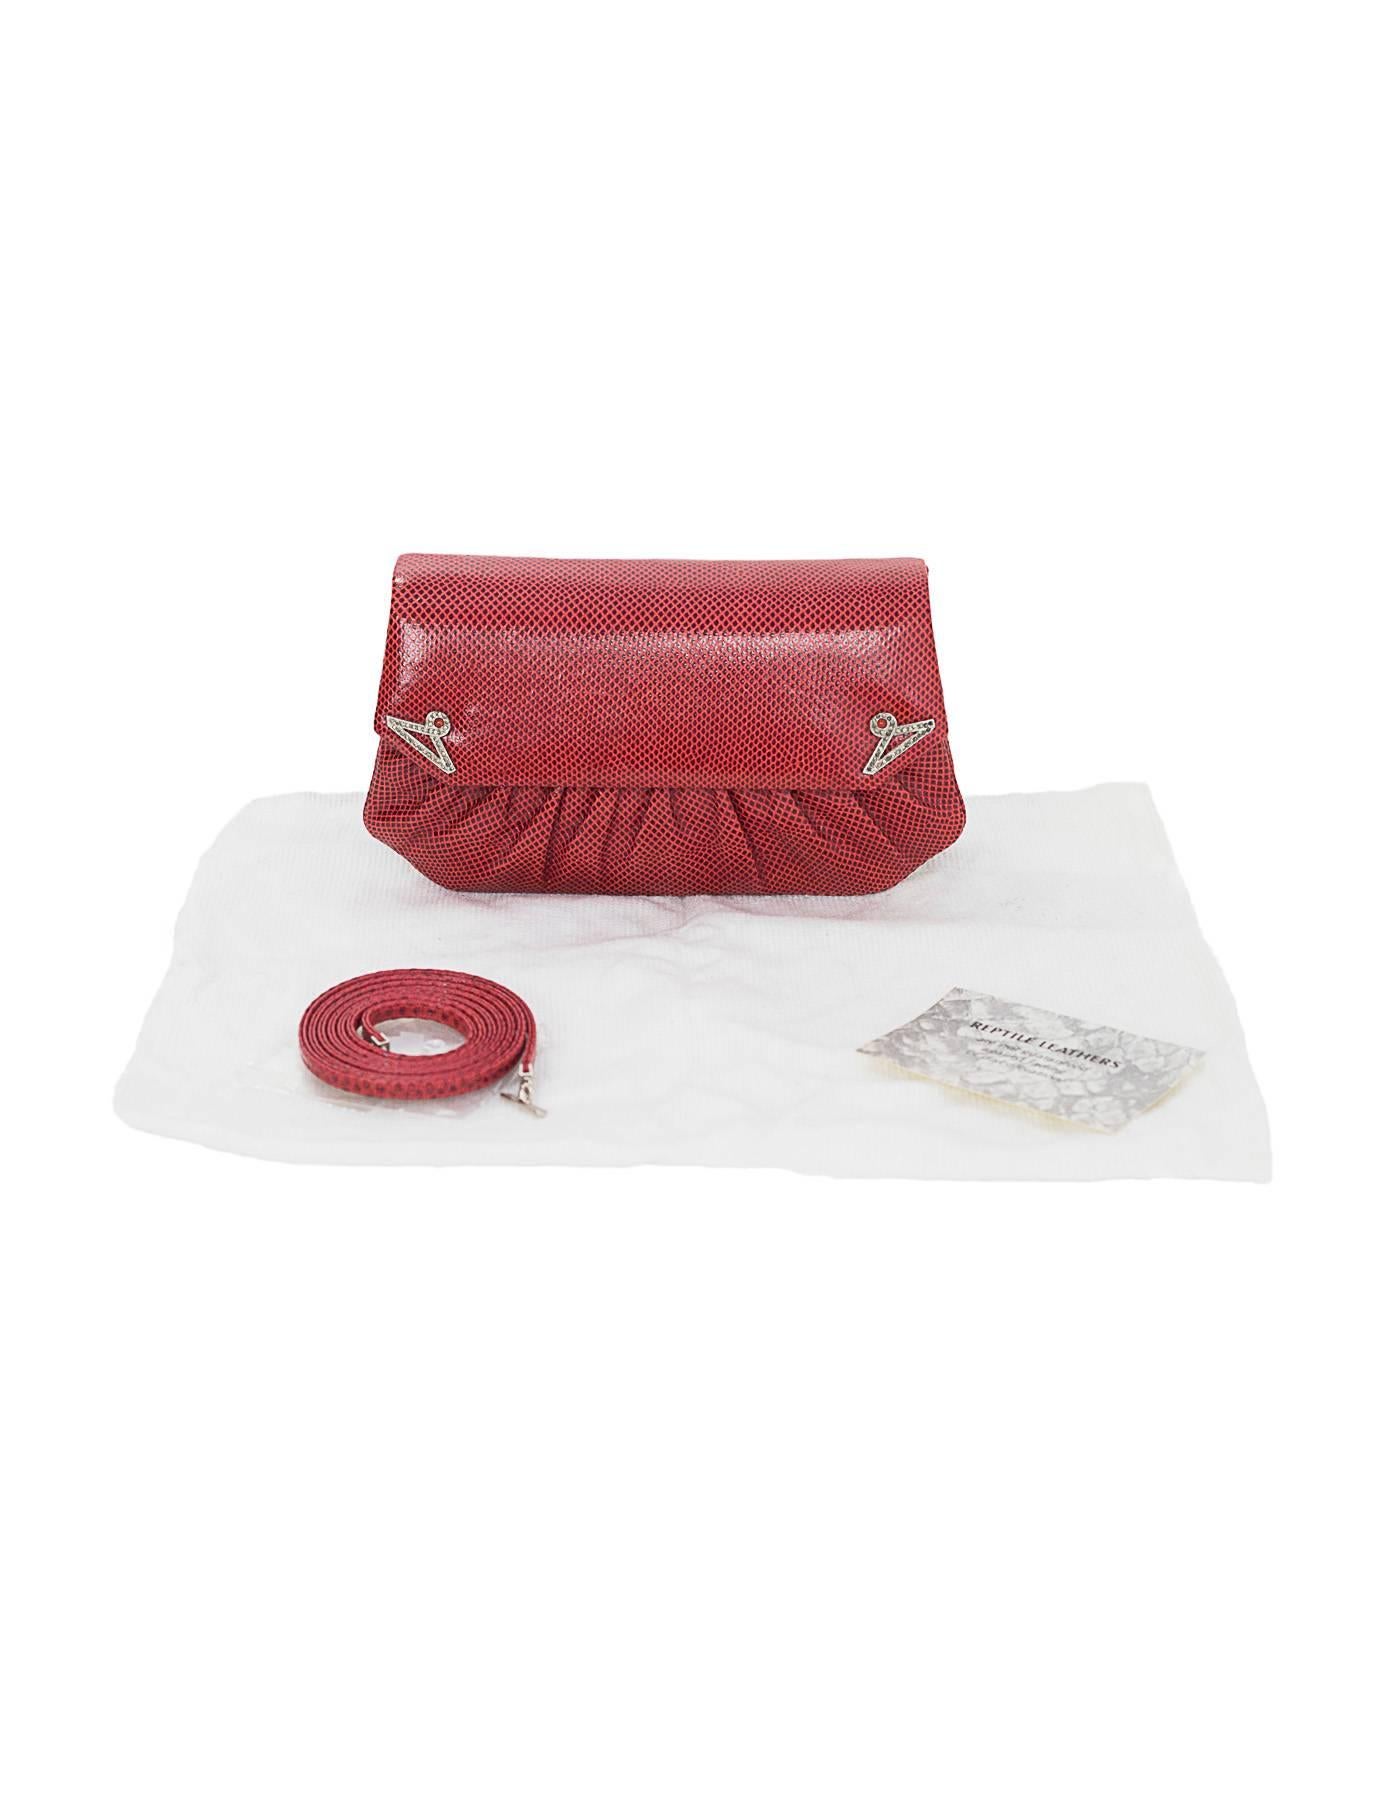 Judith Leiber Red Lizard Clutch/Crossbody Convertible Evening Bag 4